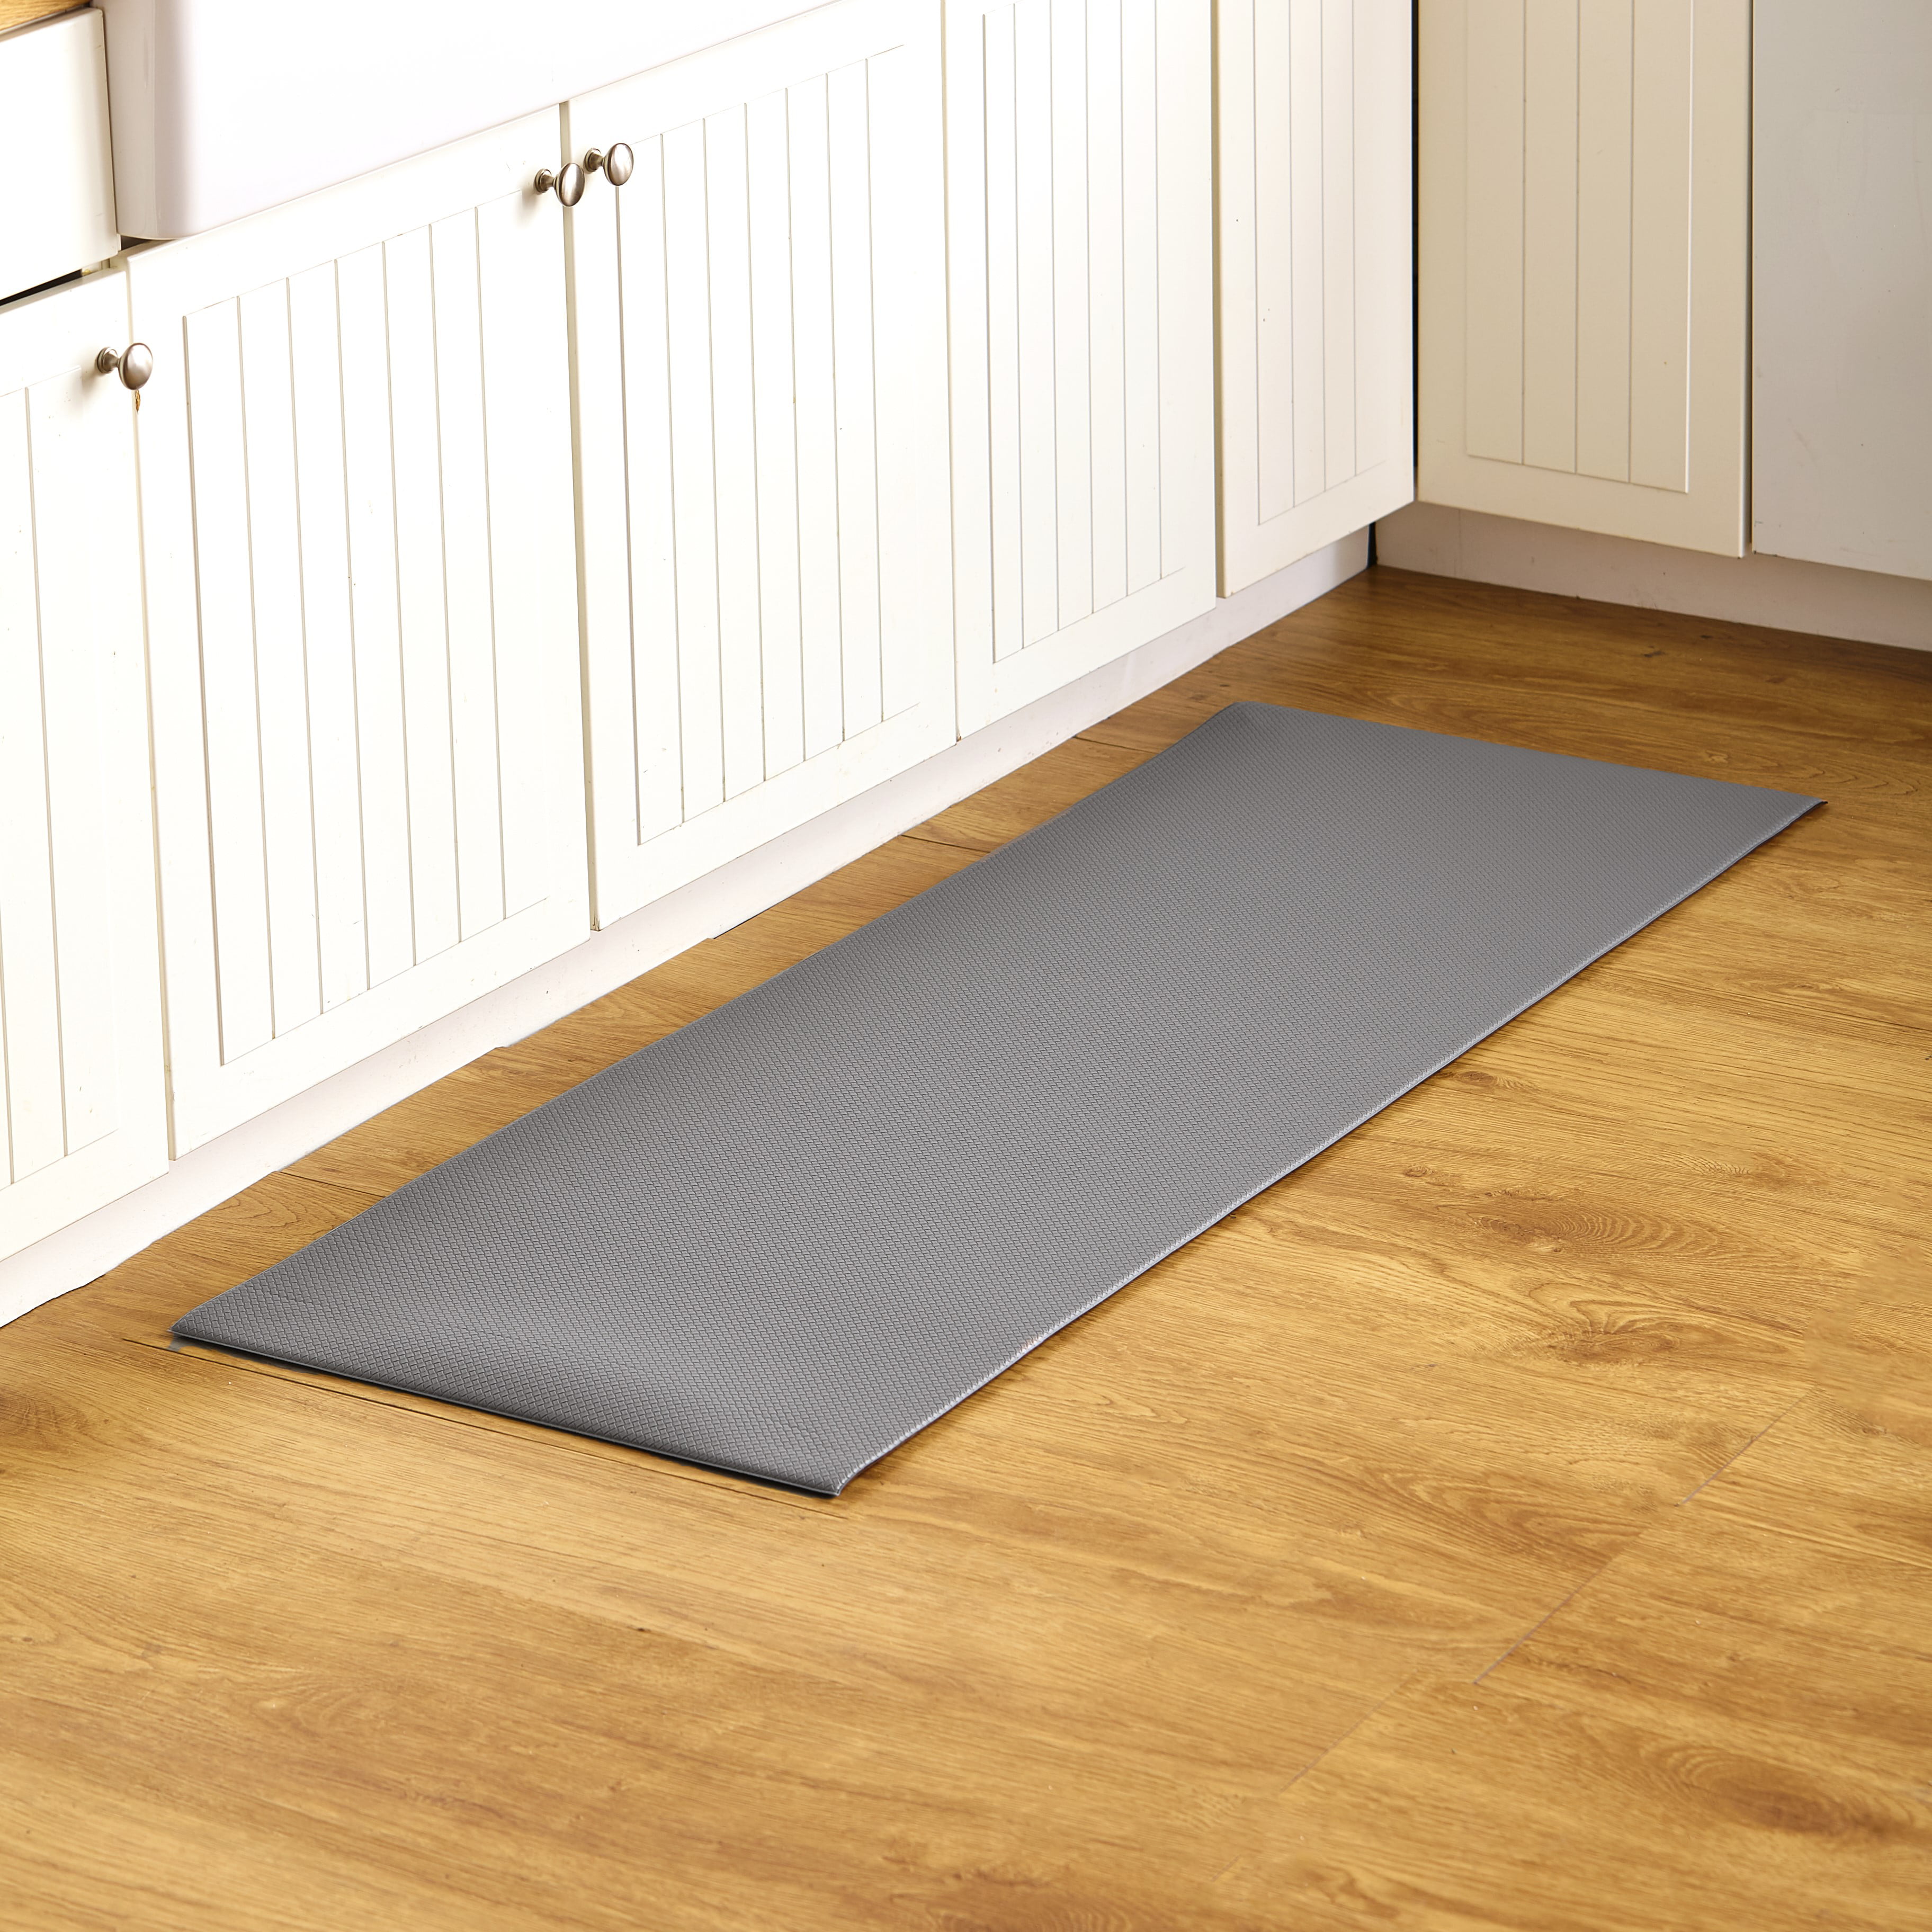 Waterproof Anti Fatigue Kitchen Floor Comfort Runner 